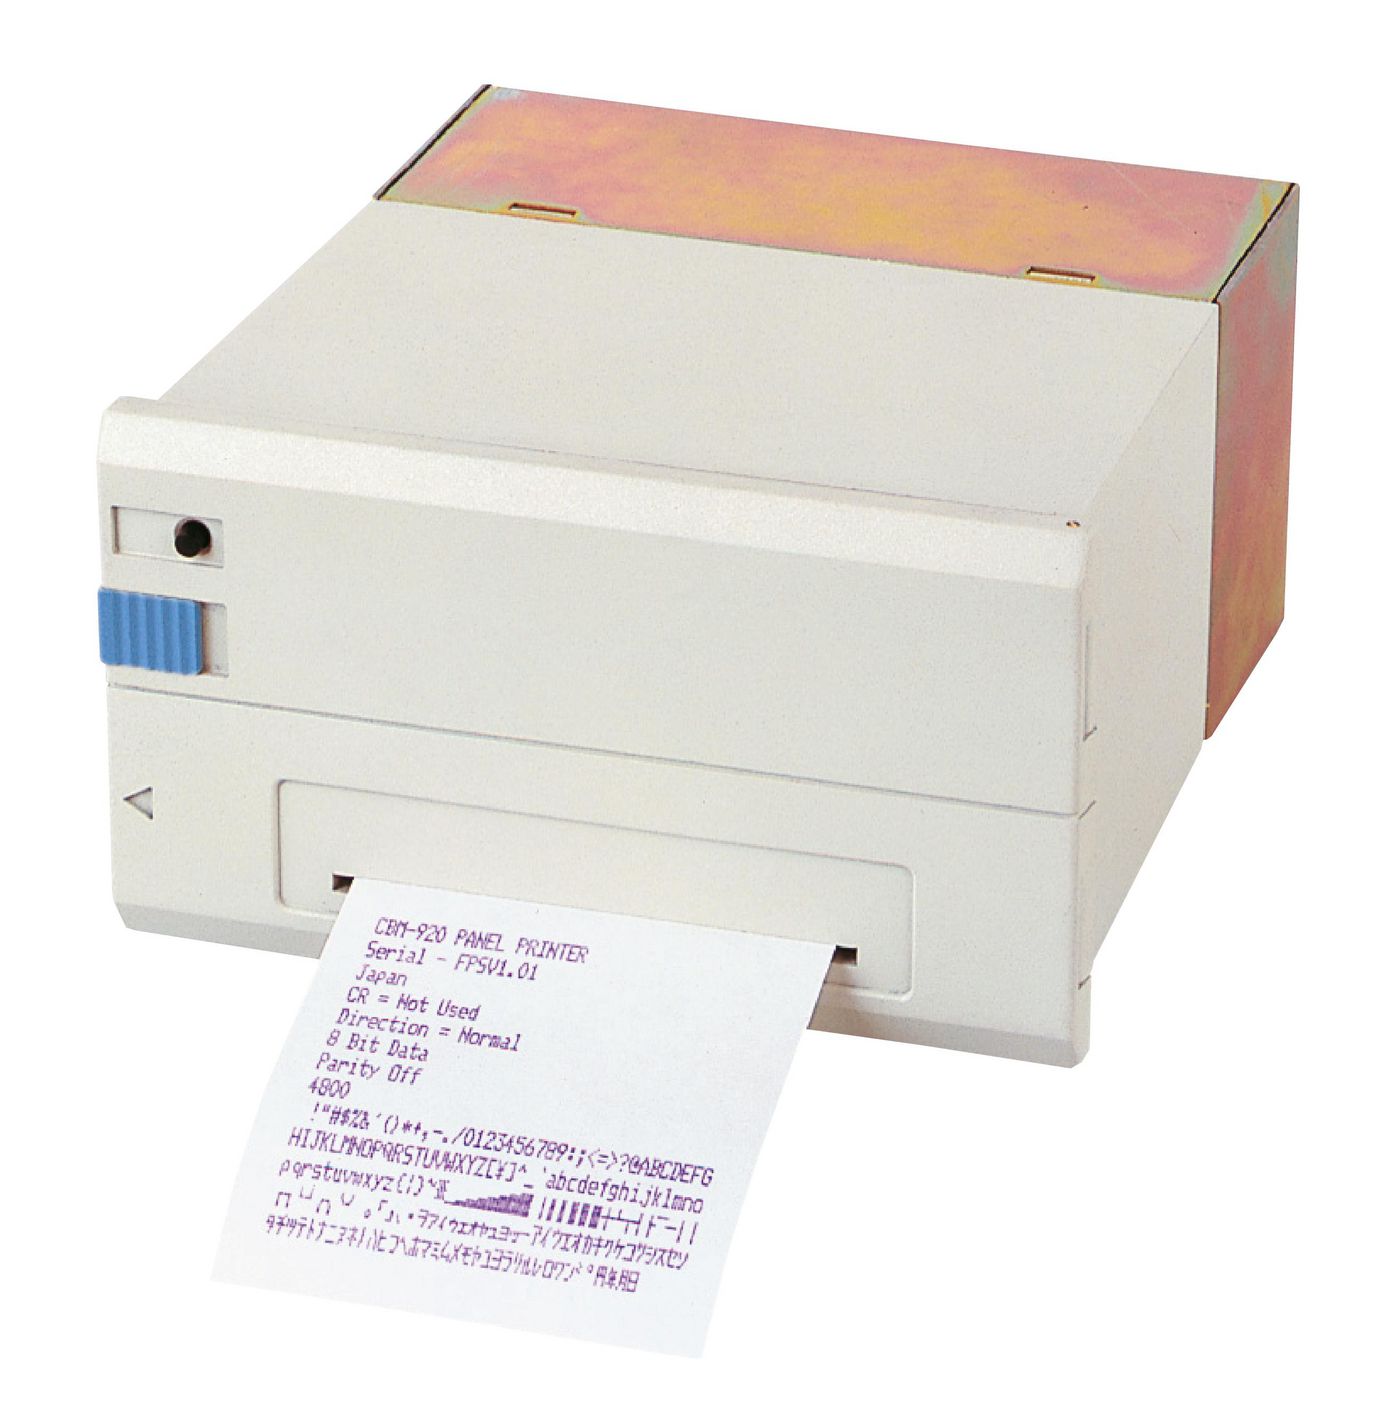 Cbm-920, Low Profile - Receipt Printer - 58mm - Parallel